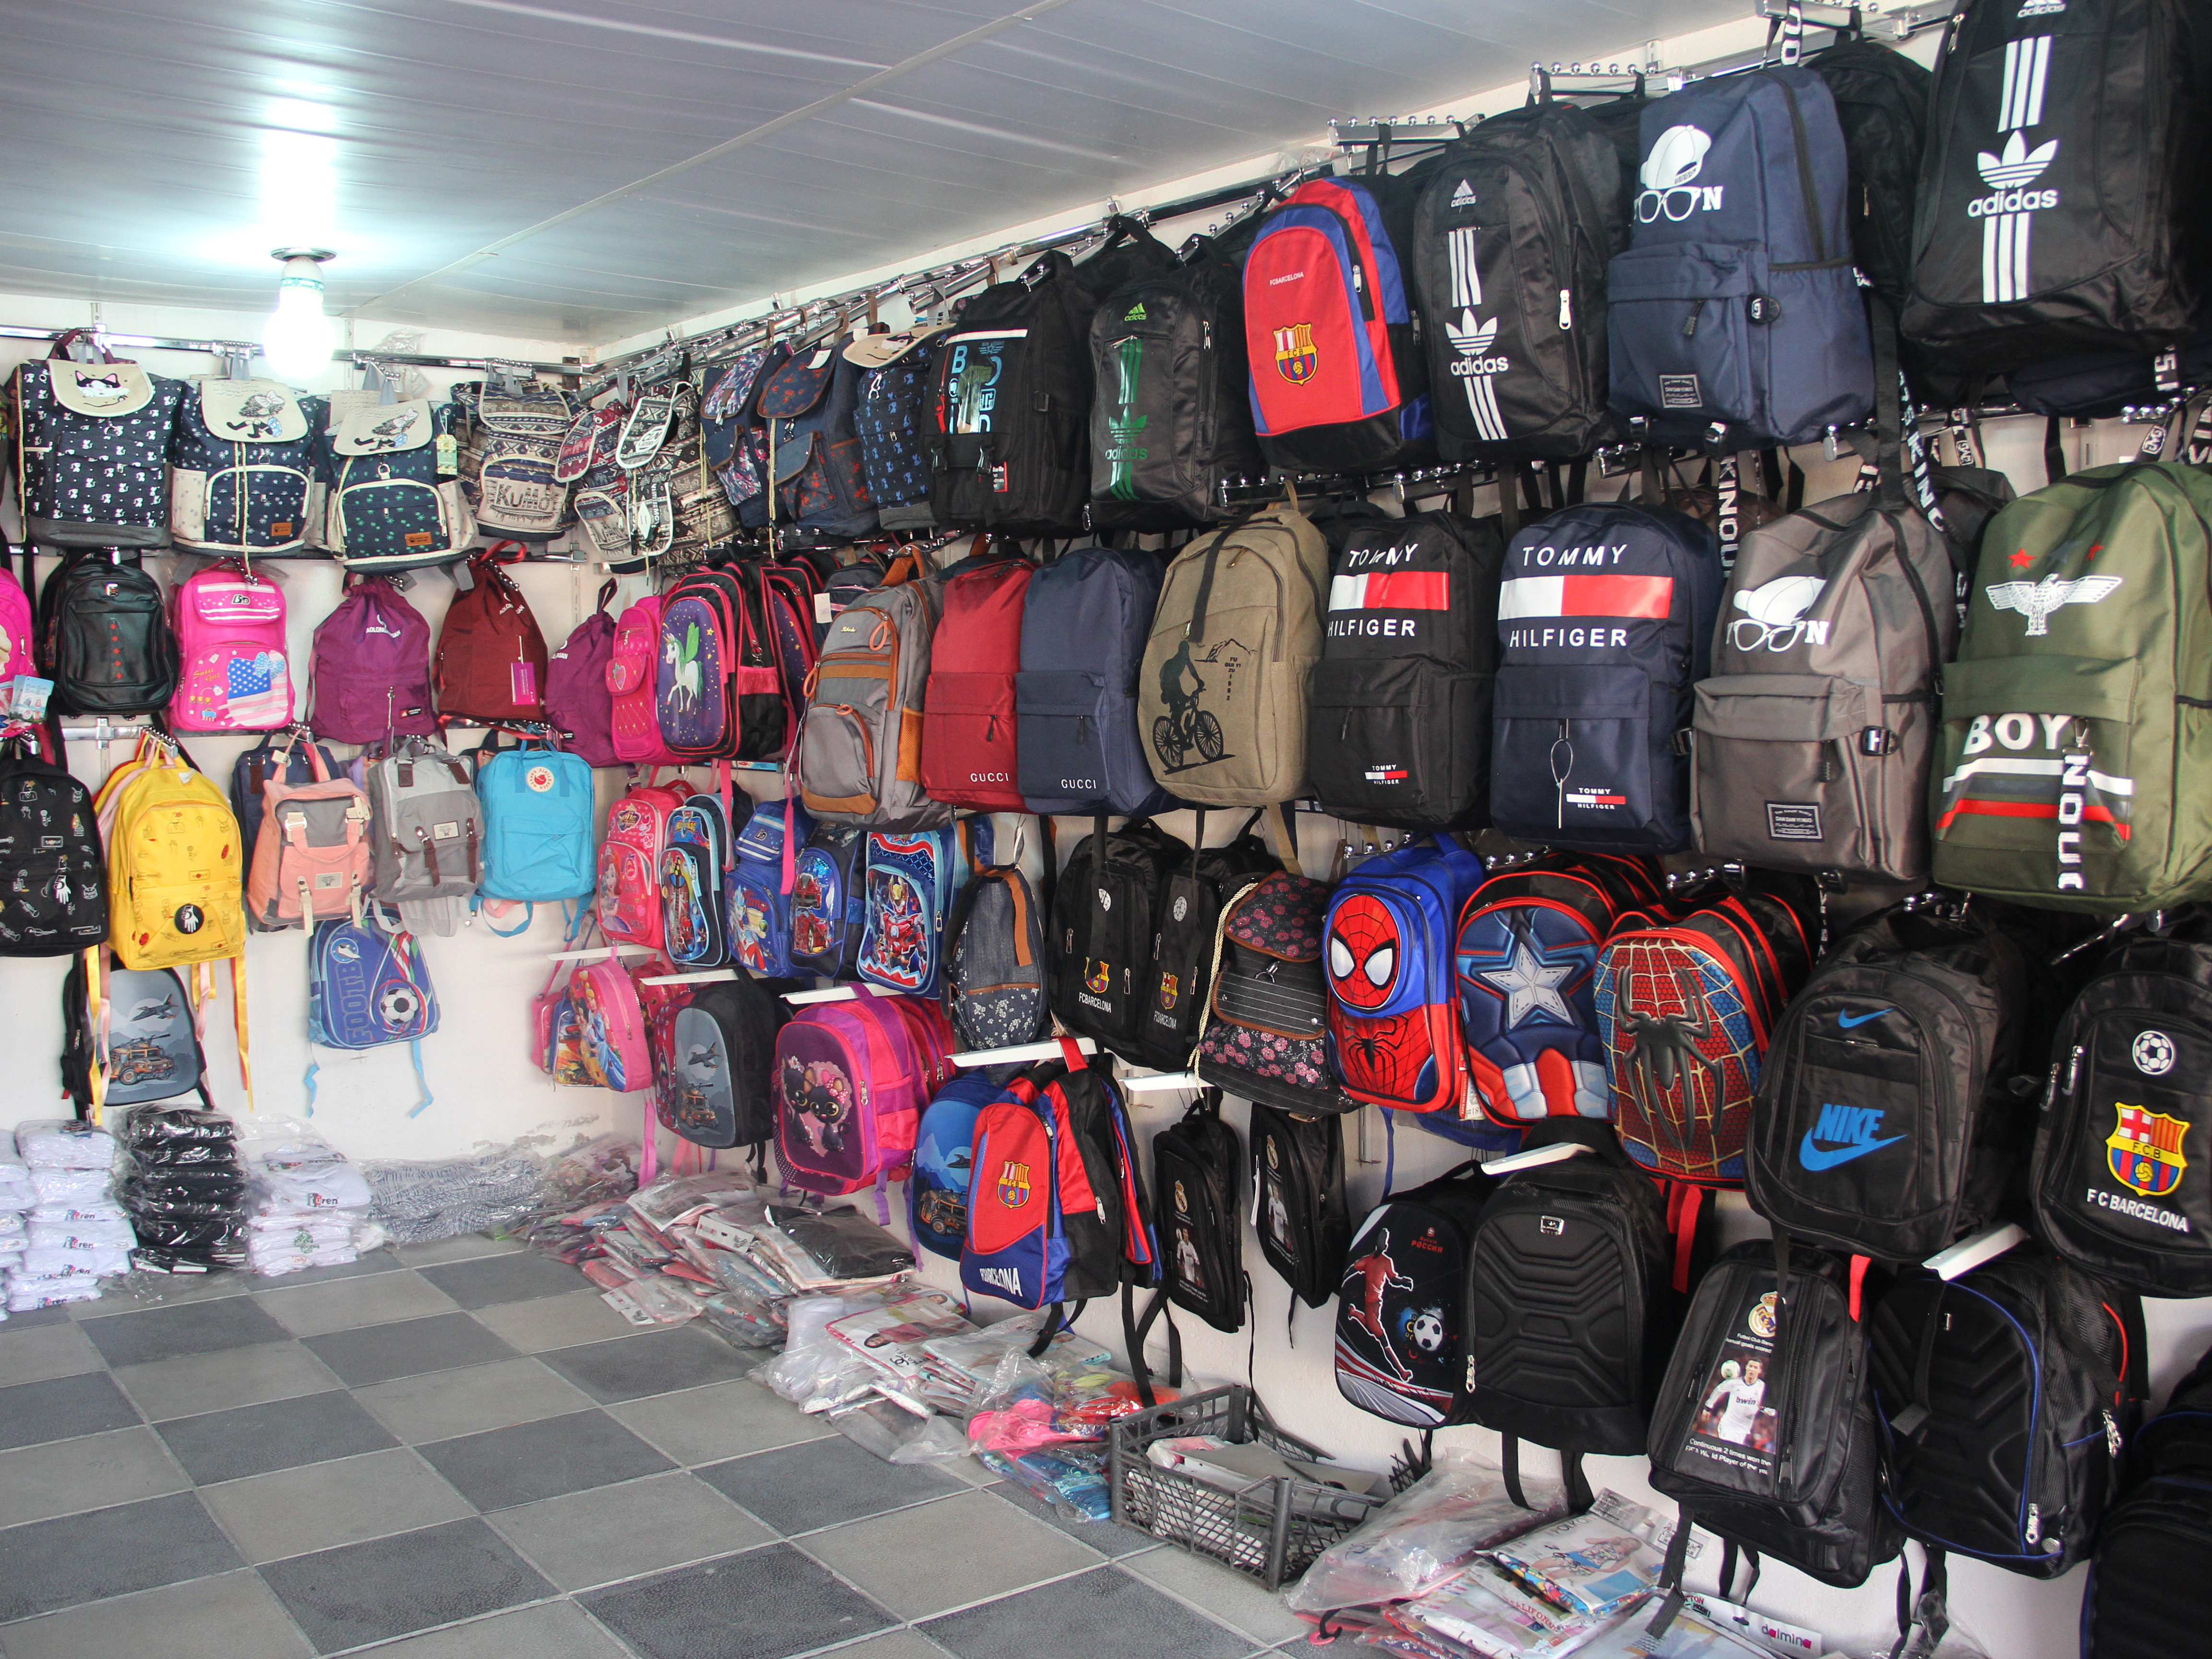 Göyçay bazarında məktəb çantaları 5 manatdan başlayaraq alıcılara təklif olunur – FOTO